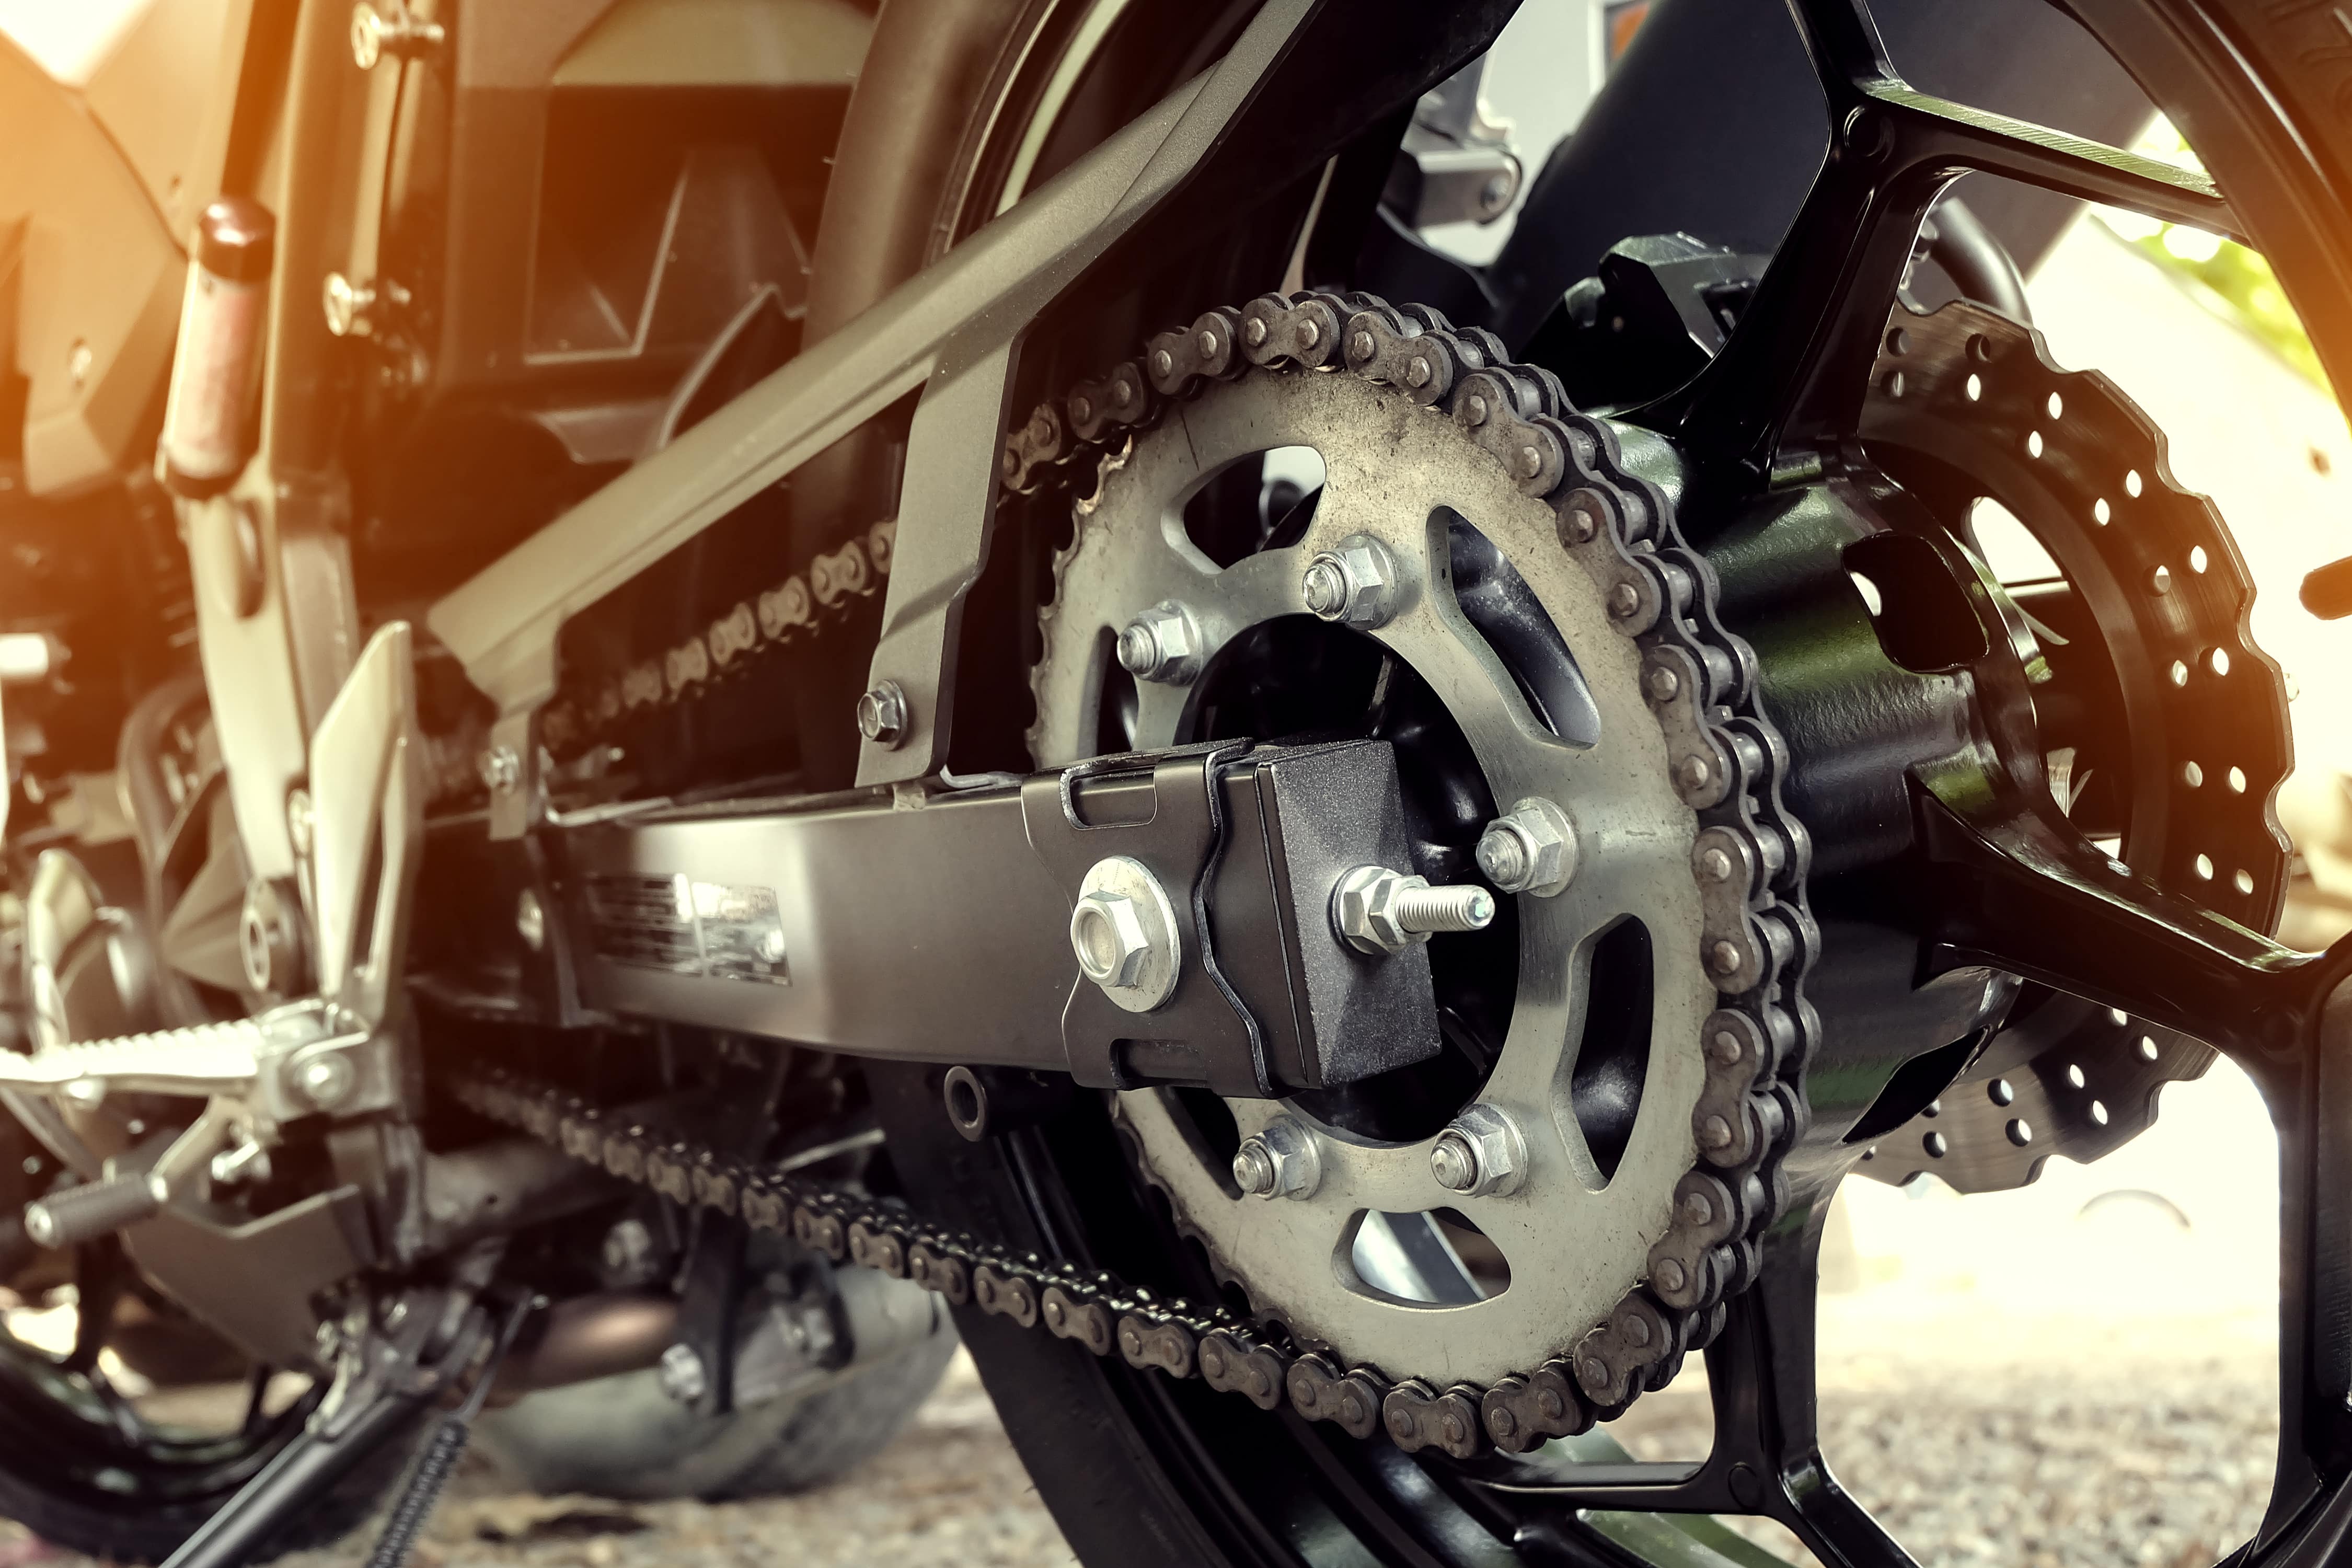 Kit chaine moto : Combien de kilomètres avant de le changer